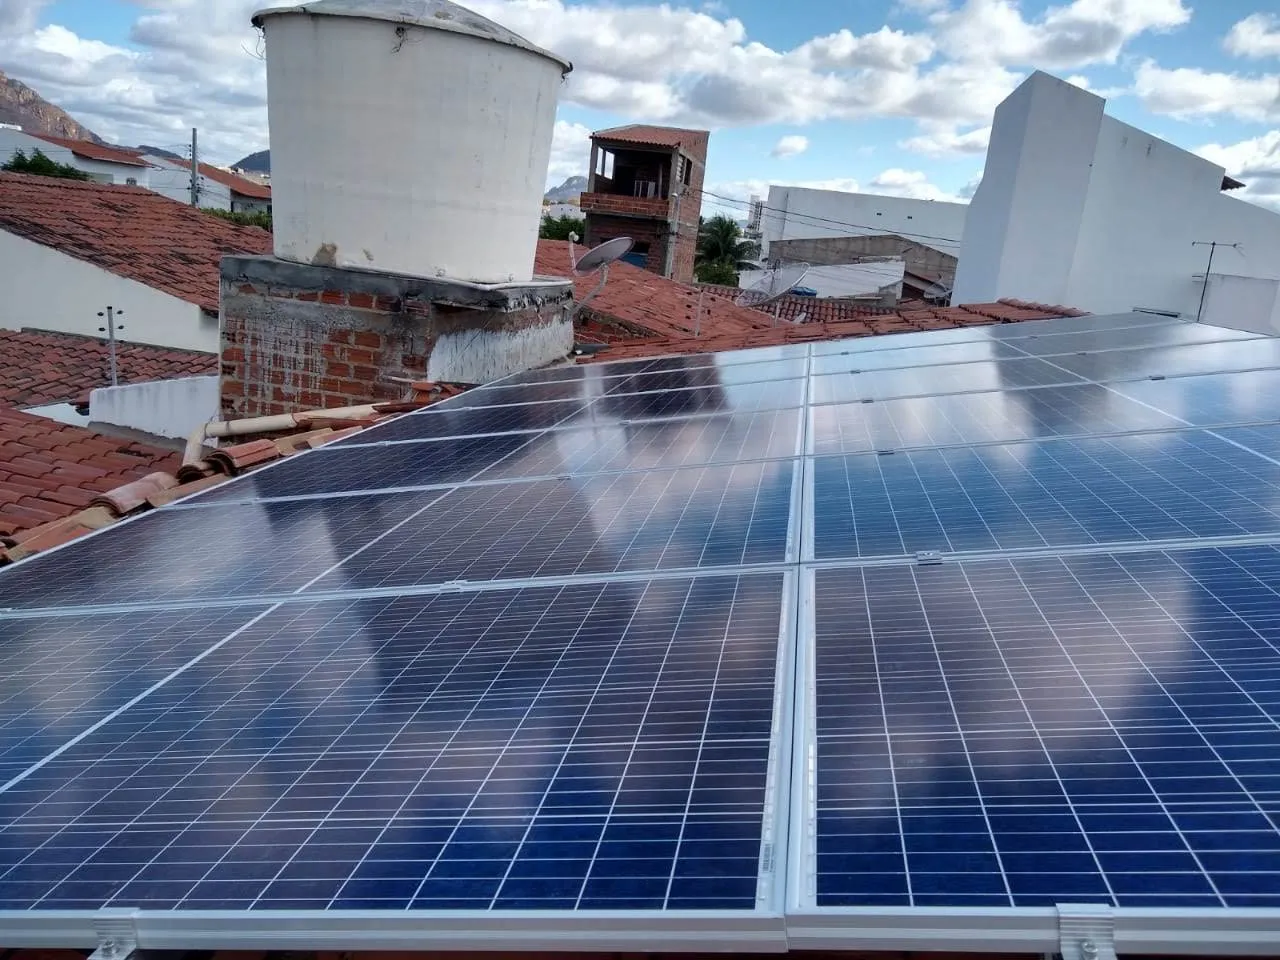 Sistema instalado no município de Serra Talhada-PE. Composto por 24 módulos Solar Fotovoltaico de potência 340 W. Com plataforma para monitoramento online.